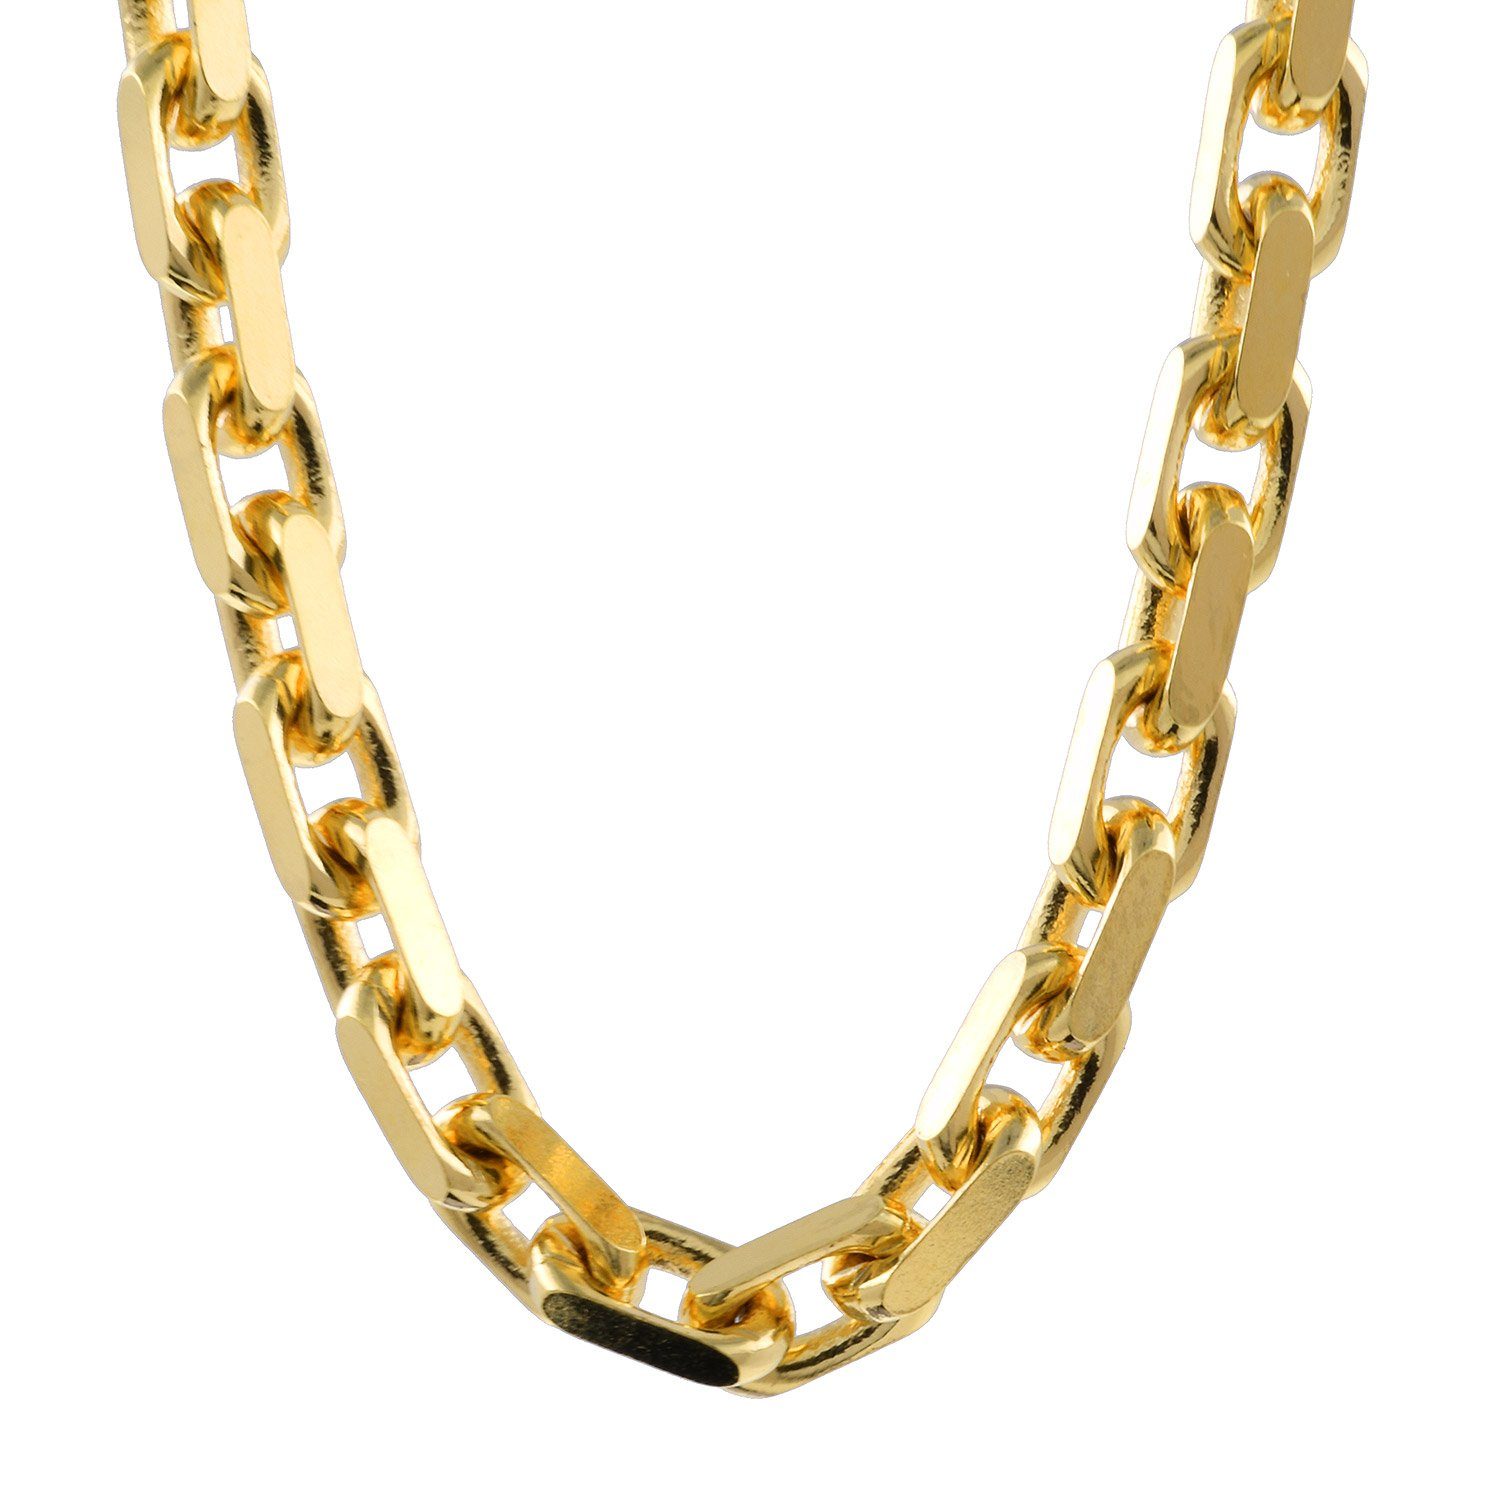 HOPLO Goldkette Ankerkette diamantiert Länge 45cm - Breite 3,0mm - 750-18  Karat Gold, Made in Germany, Edle Kette in Juwelier Qualität